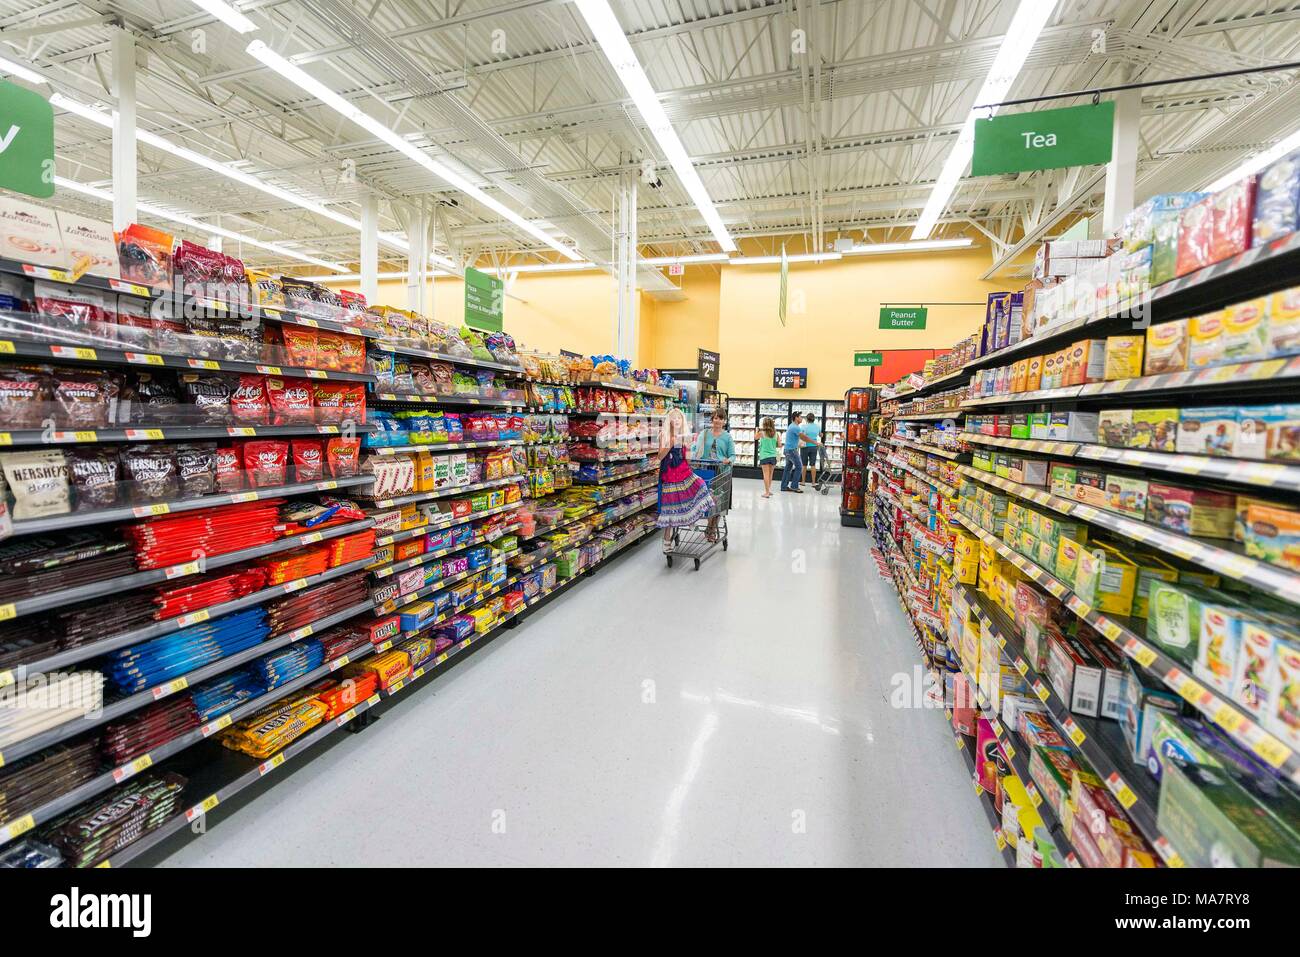 Walmart, Napoli,florida, Stati Uniti d'America,negozi,cibo mall shopping,corridoio,corridoio,people shopping,contenitori per alimenti,interno,architettura, Foto Stock